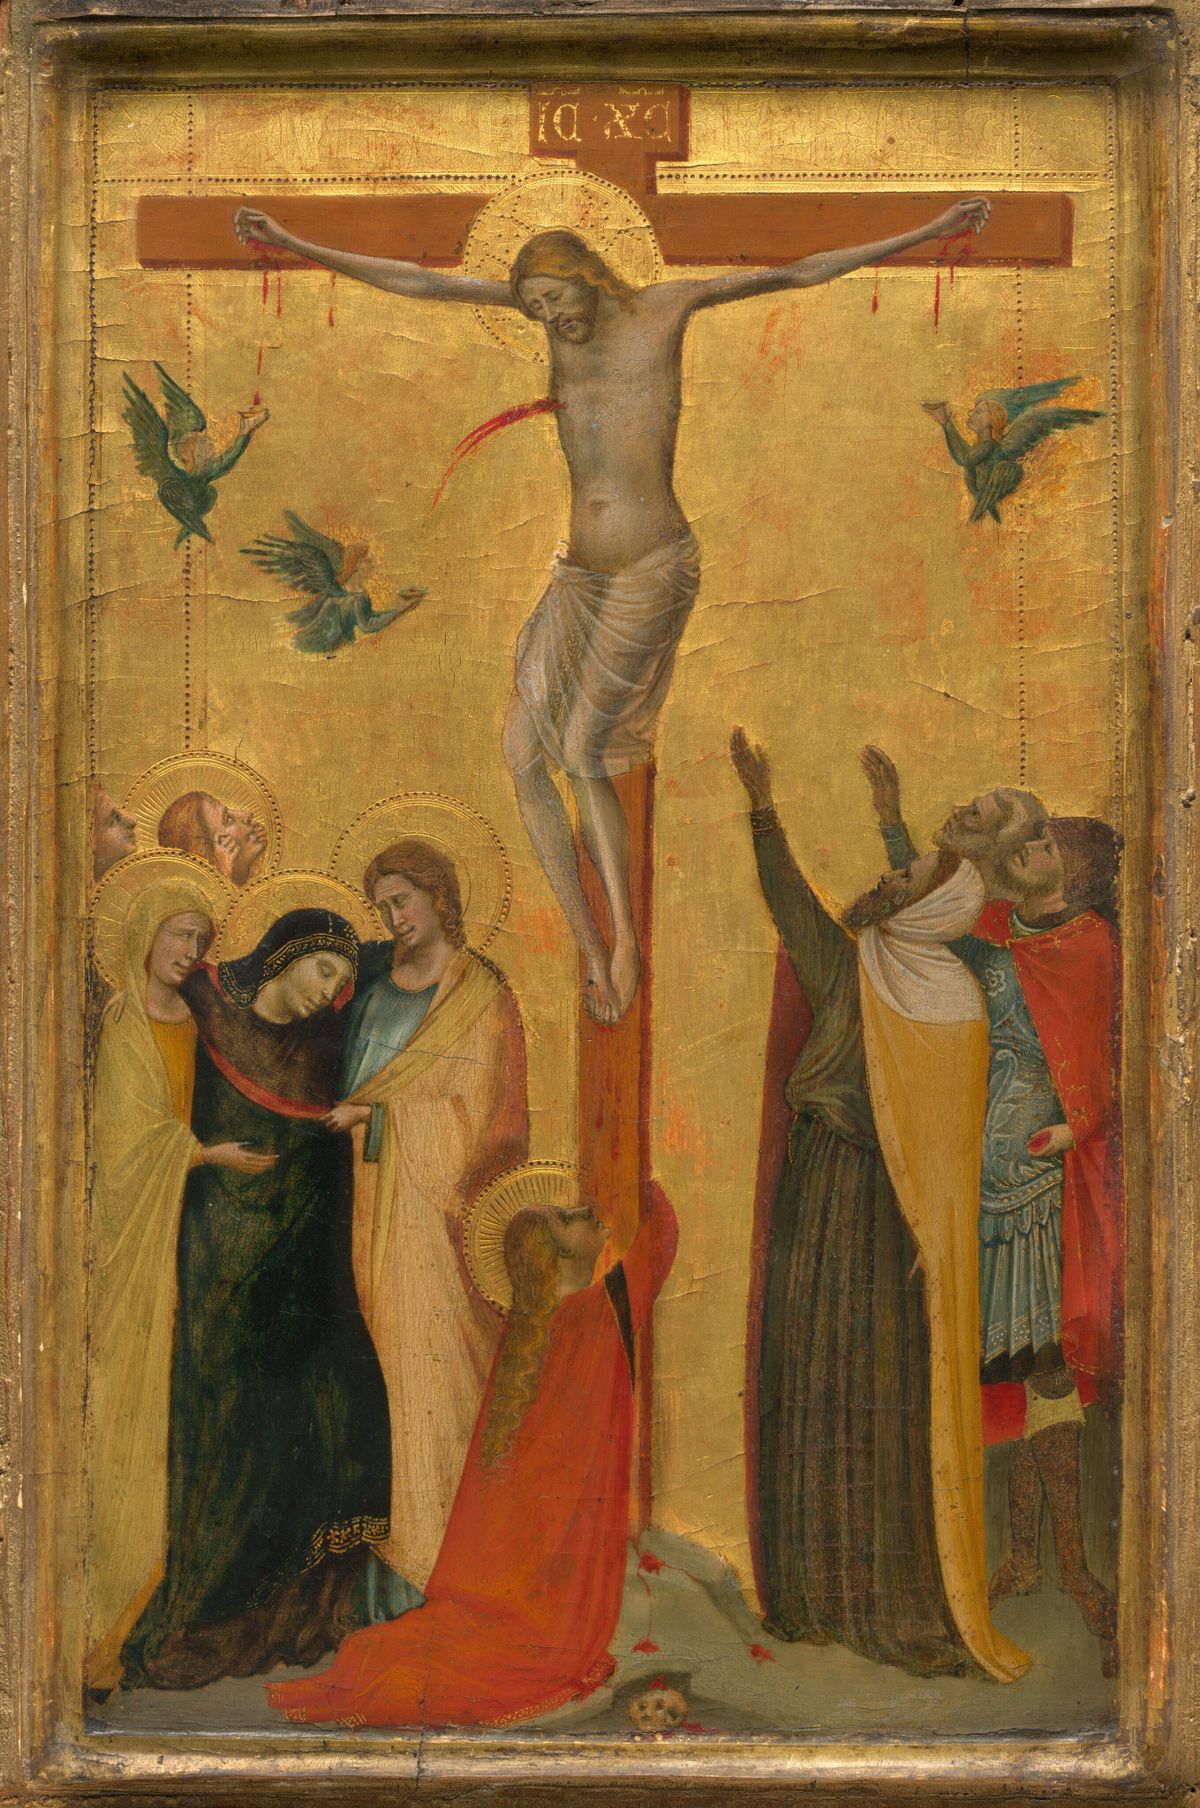 The Crucifixion by Bernardo Daddi (1320-1325) - Public Domain Bible Painting